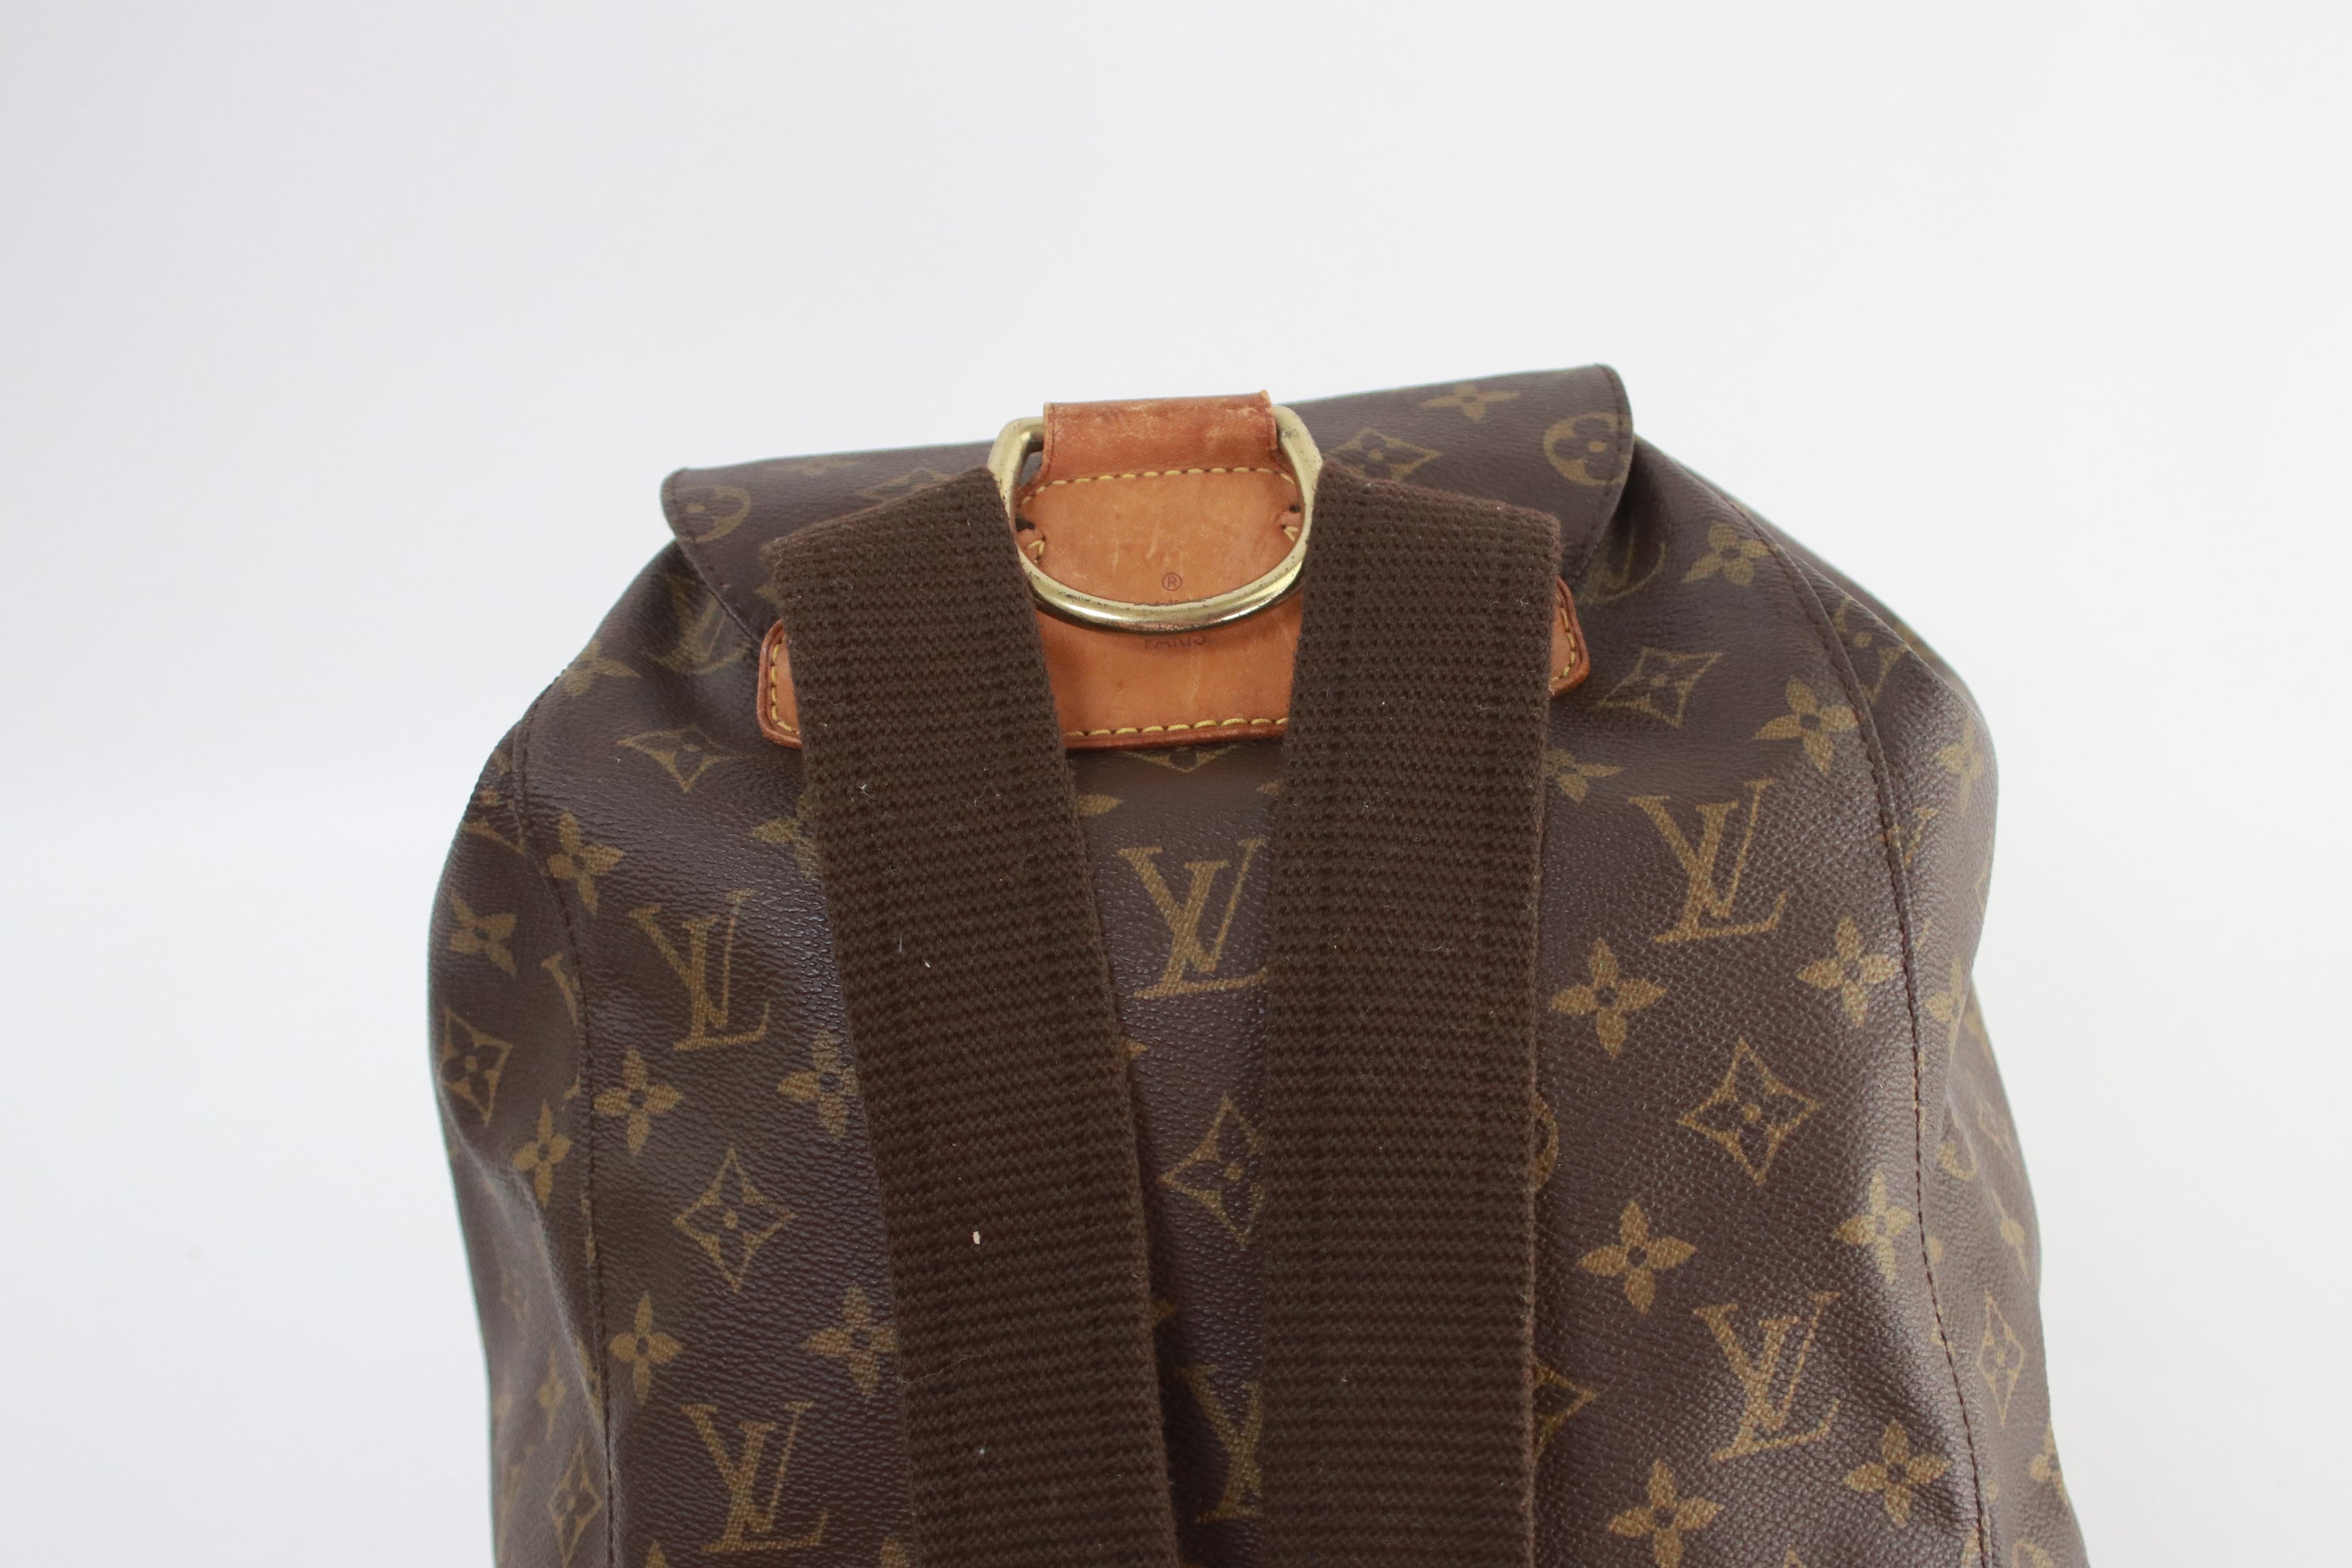 Louis Vuitton keepall 45, Louis Vuitton backpack, montsouris gm